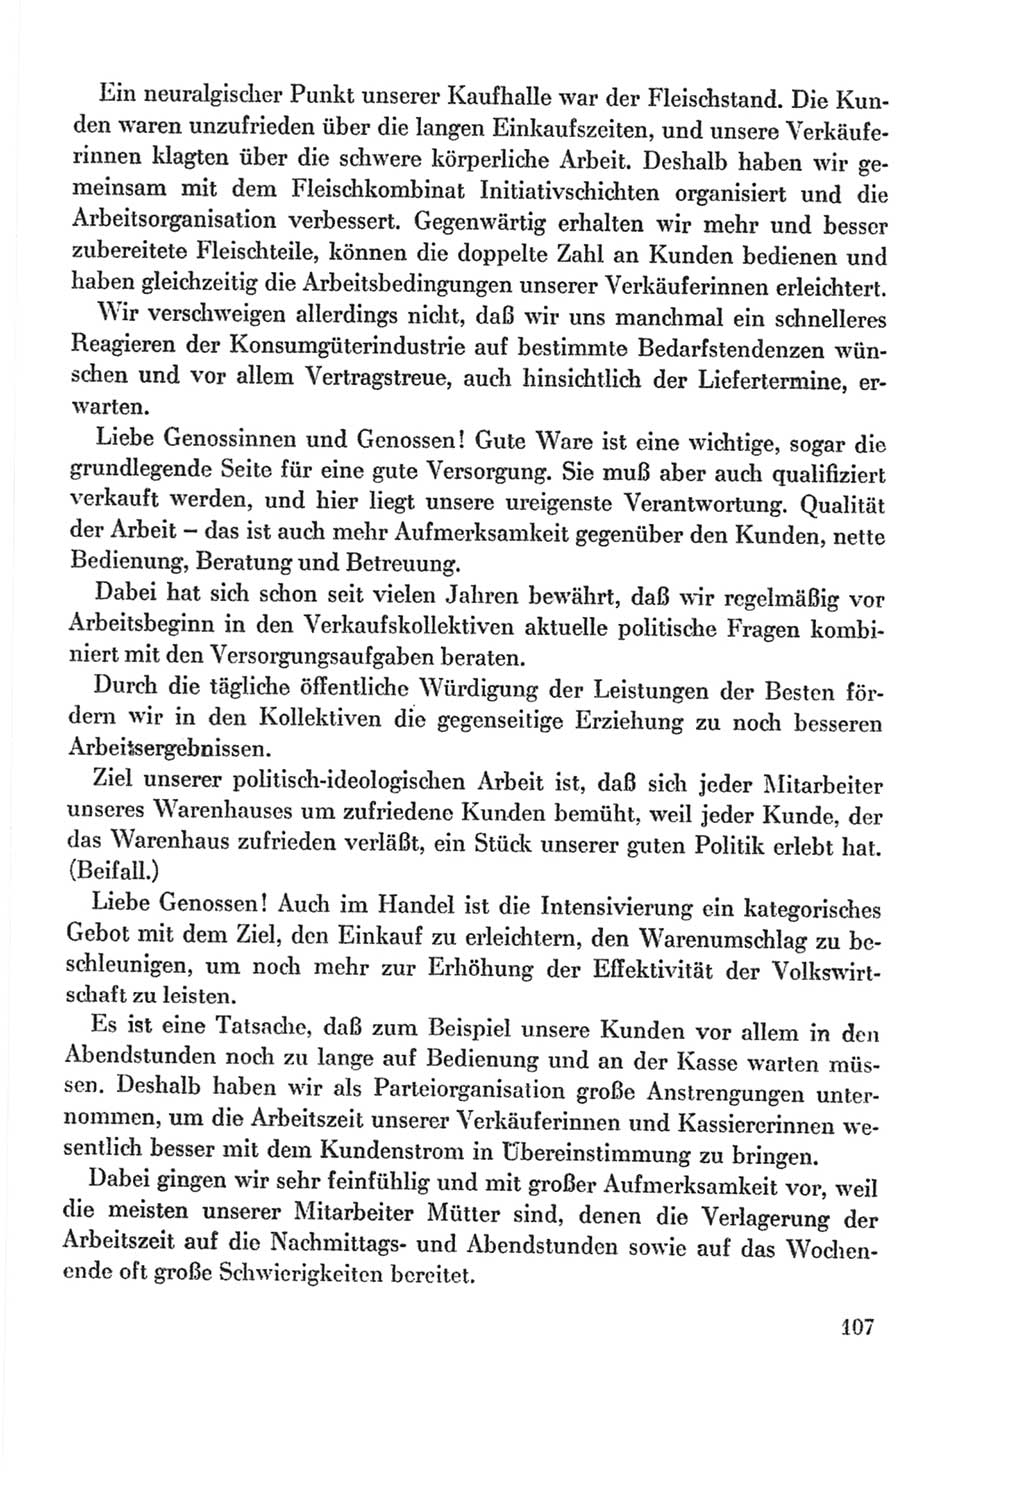 Protokoll der Verhandlungen des Ⅸ. Parteitages der Sozialistischen Einheitspartei Deutschlands (SED) [Deutsche Demokratische Republik (DDR)] 1976, Band 2, Seite 107 (Prot. Verh. Ⅸ. PT SED DDR 1976, Bd. 2, S. 107)